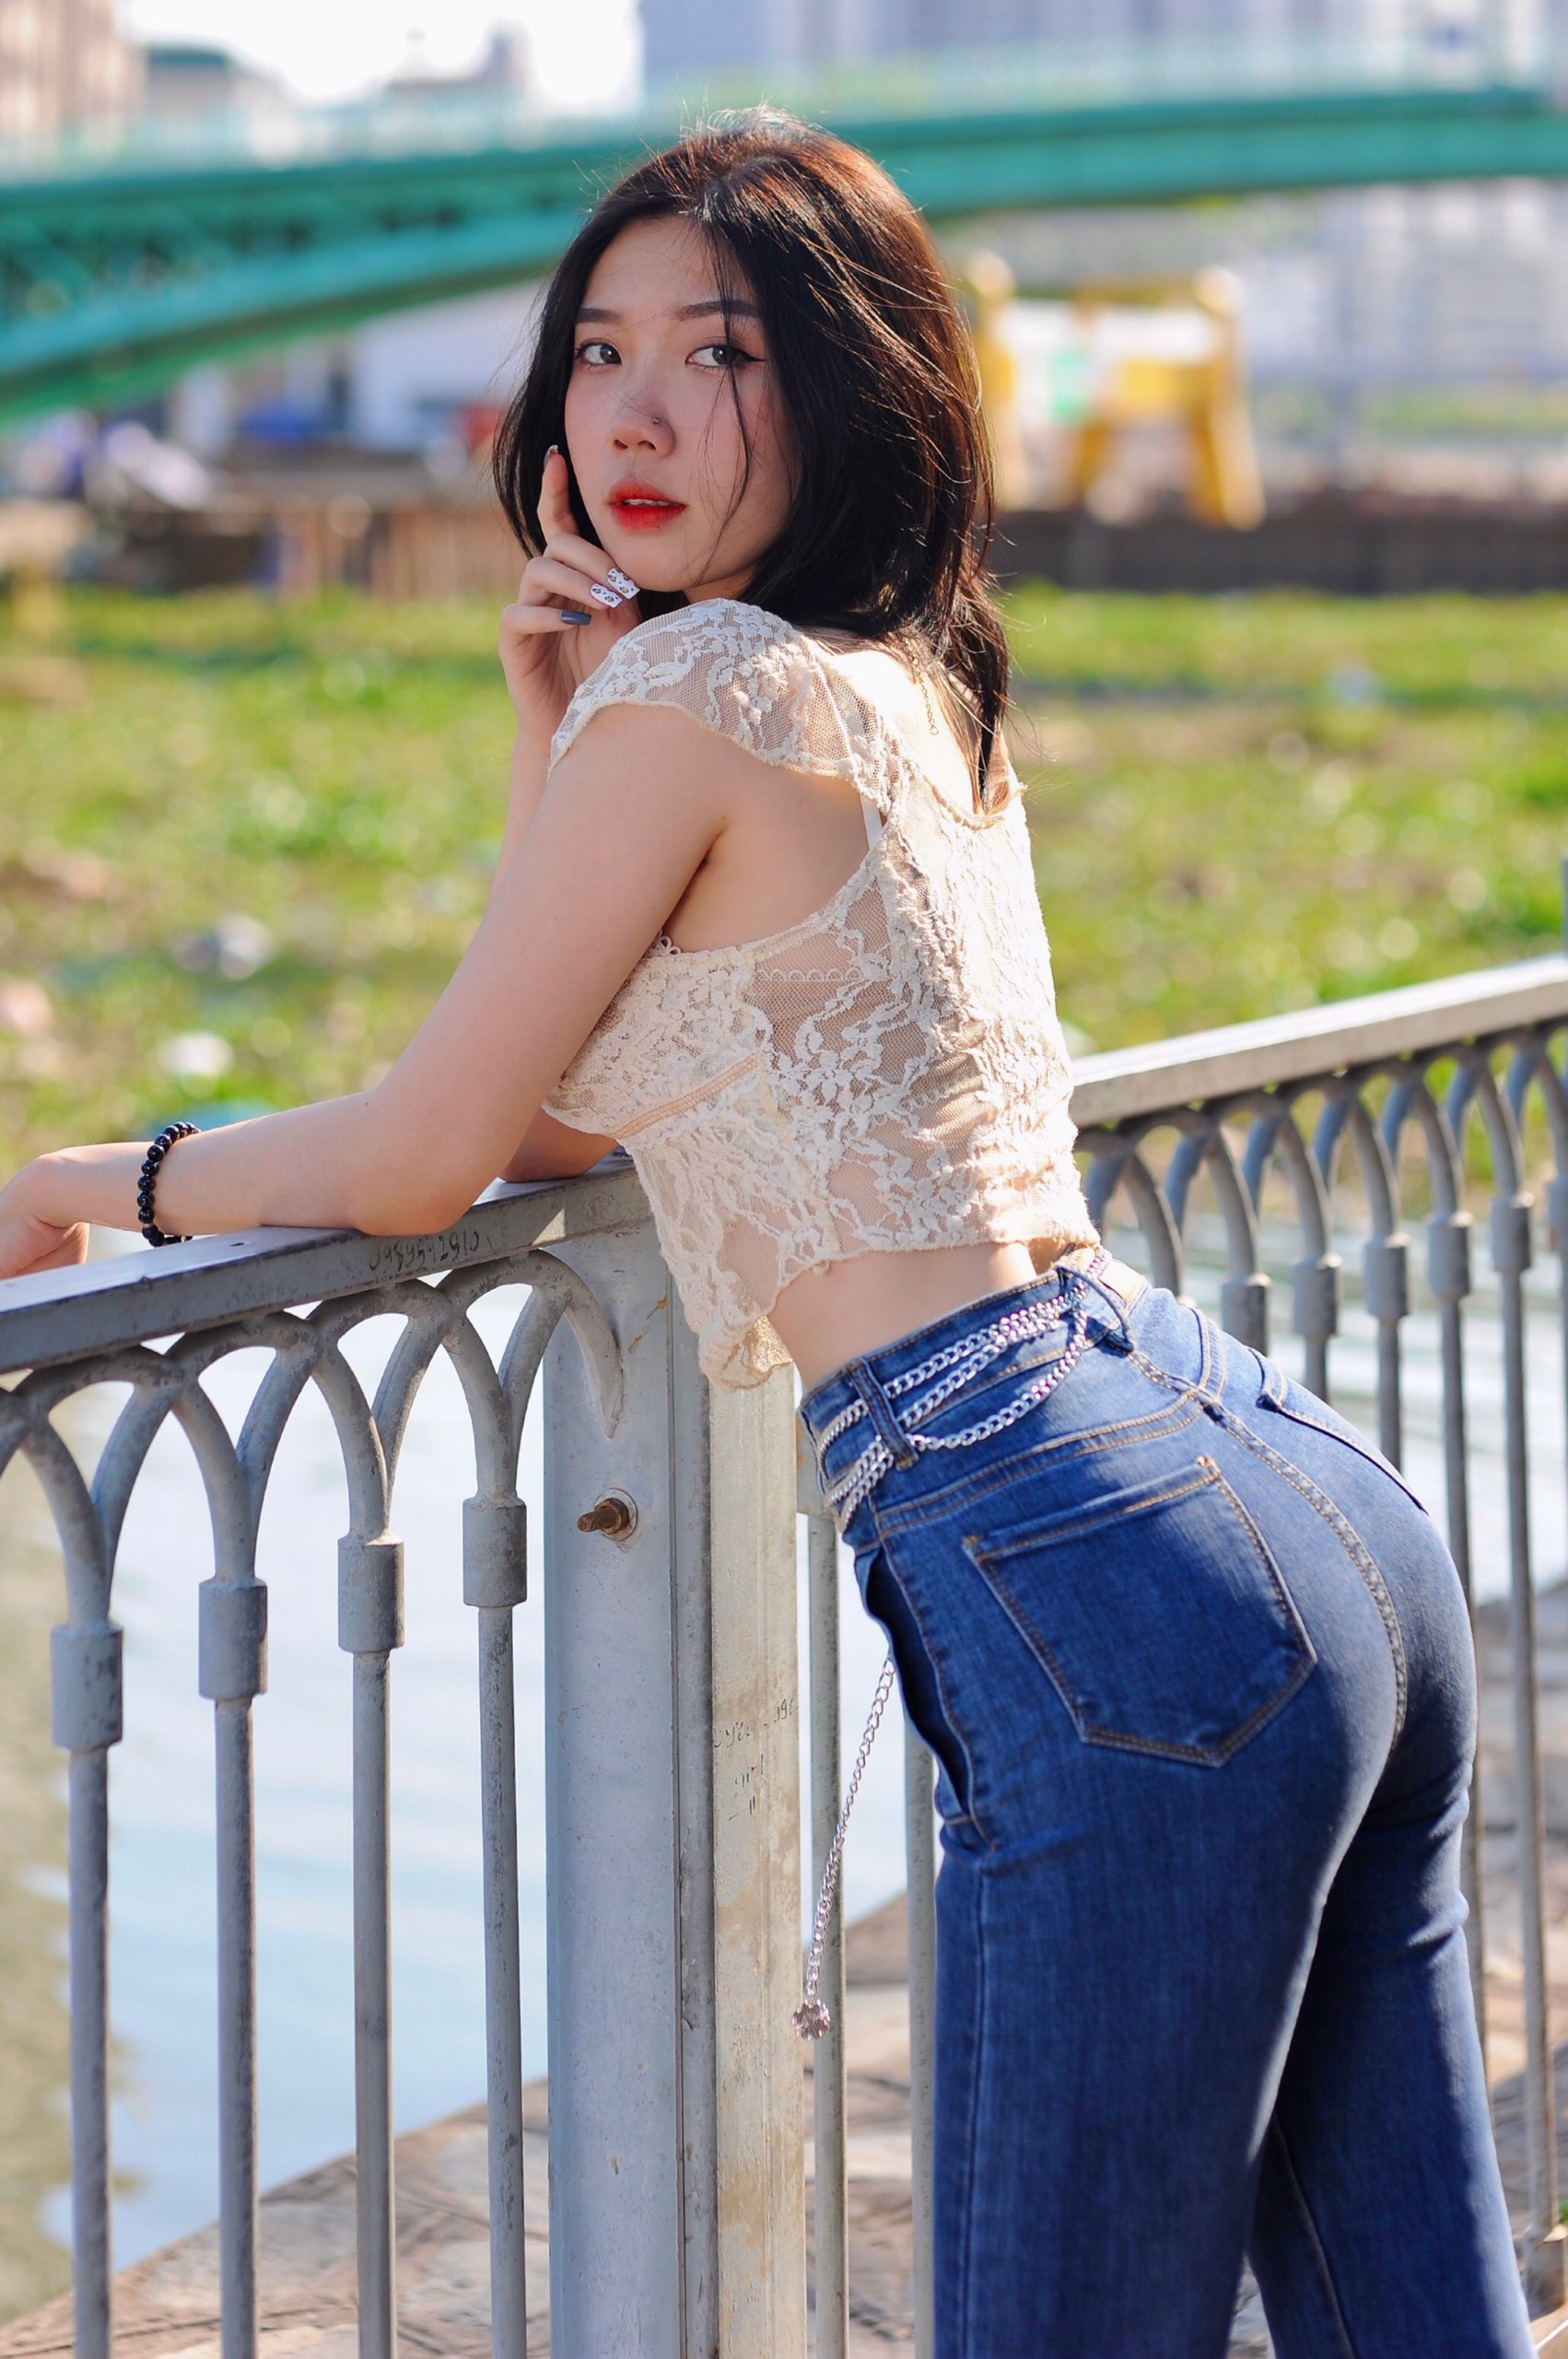 Hot girl Đồng Nai diện đồ gợi cảm, khoe khéo vóc dáng chuẩn đẹp - 7